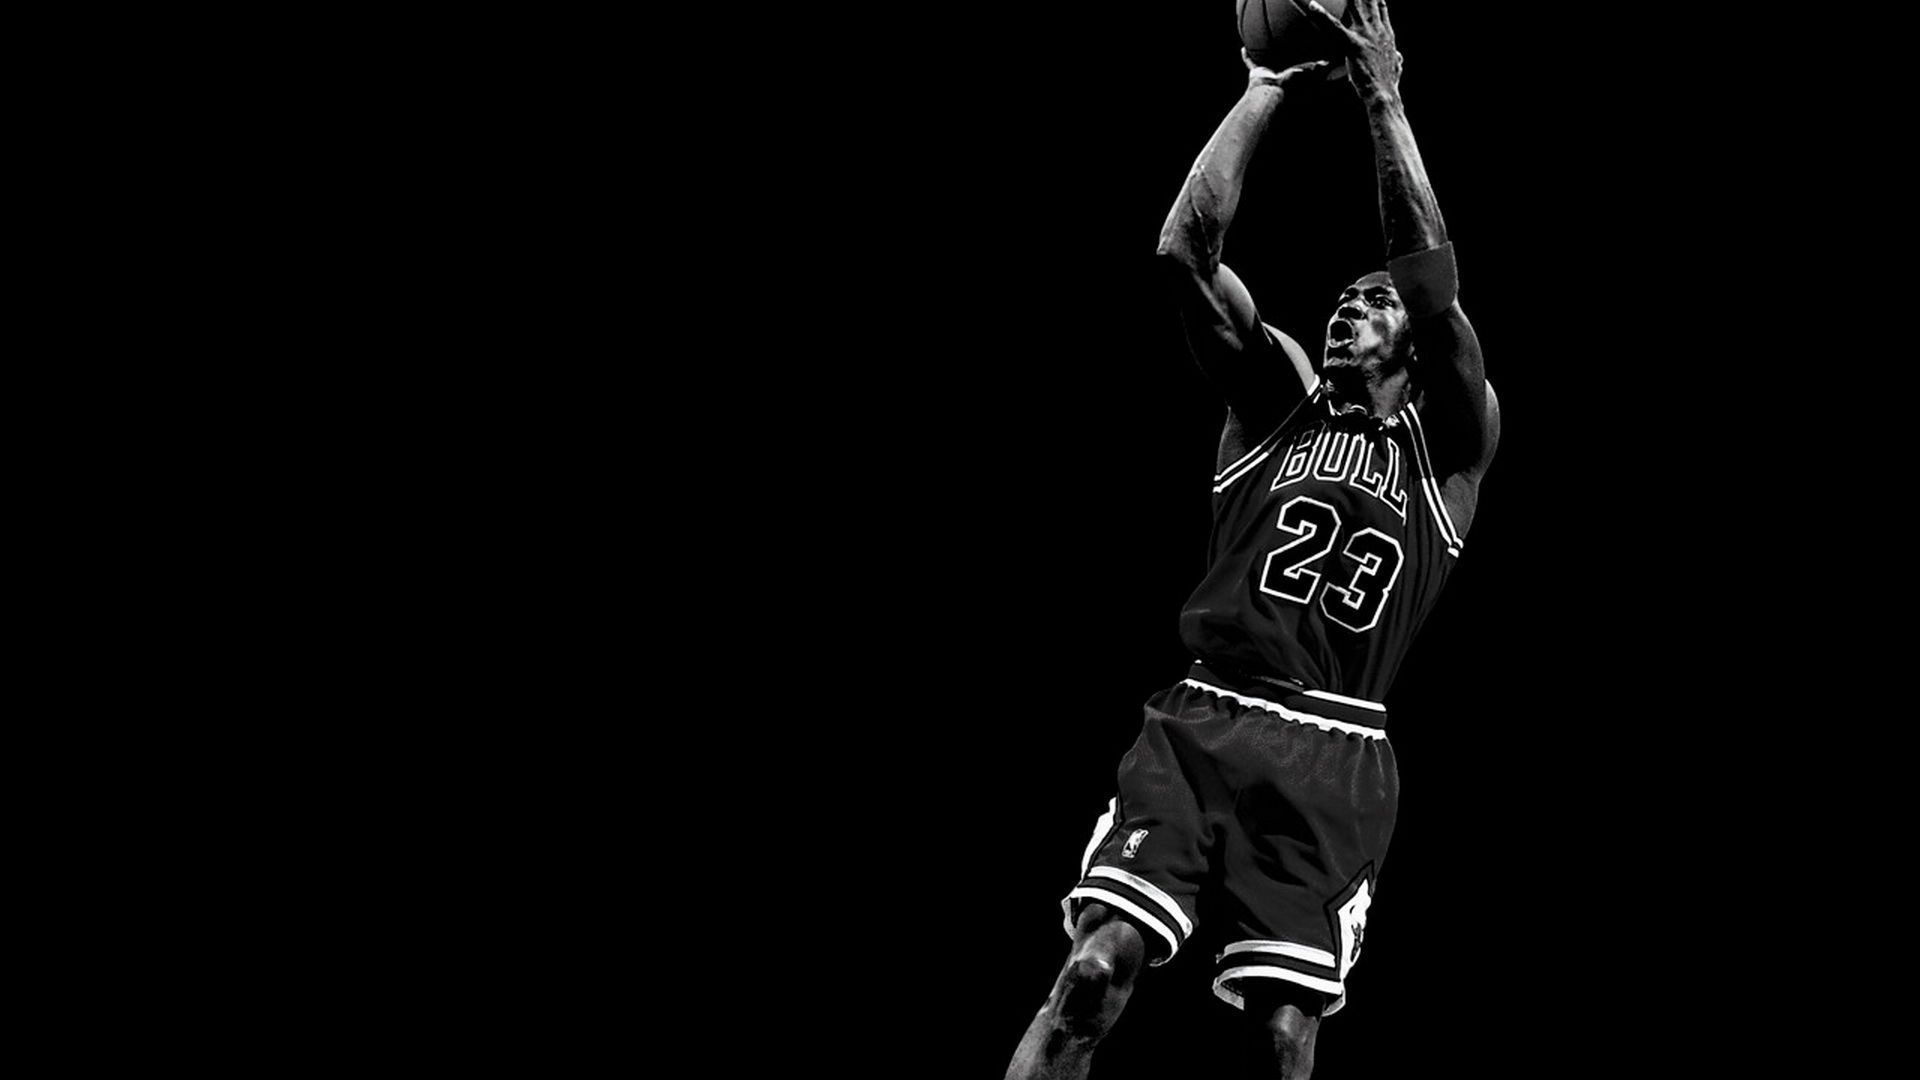 Michael Jordan Black And White Wallpaper #JOe. Bulls wallpaper